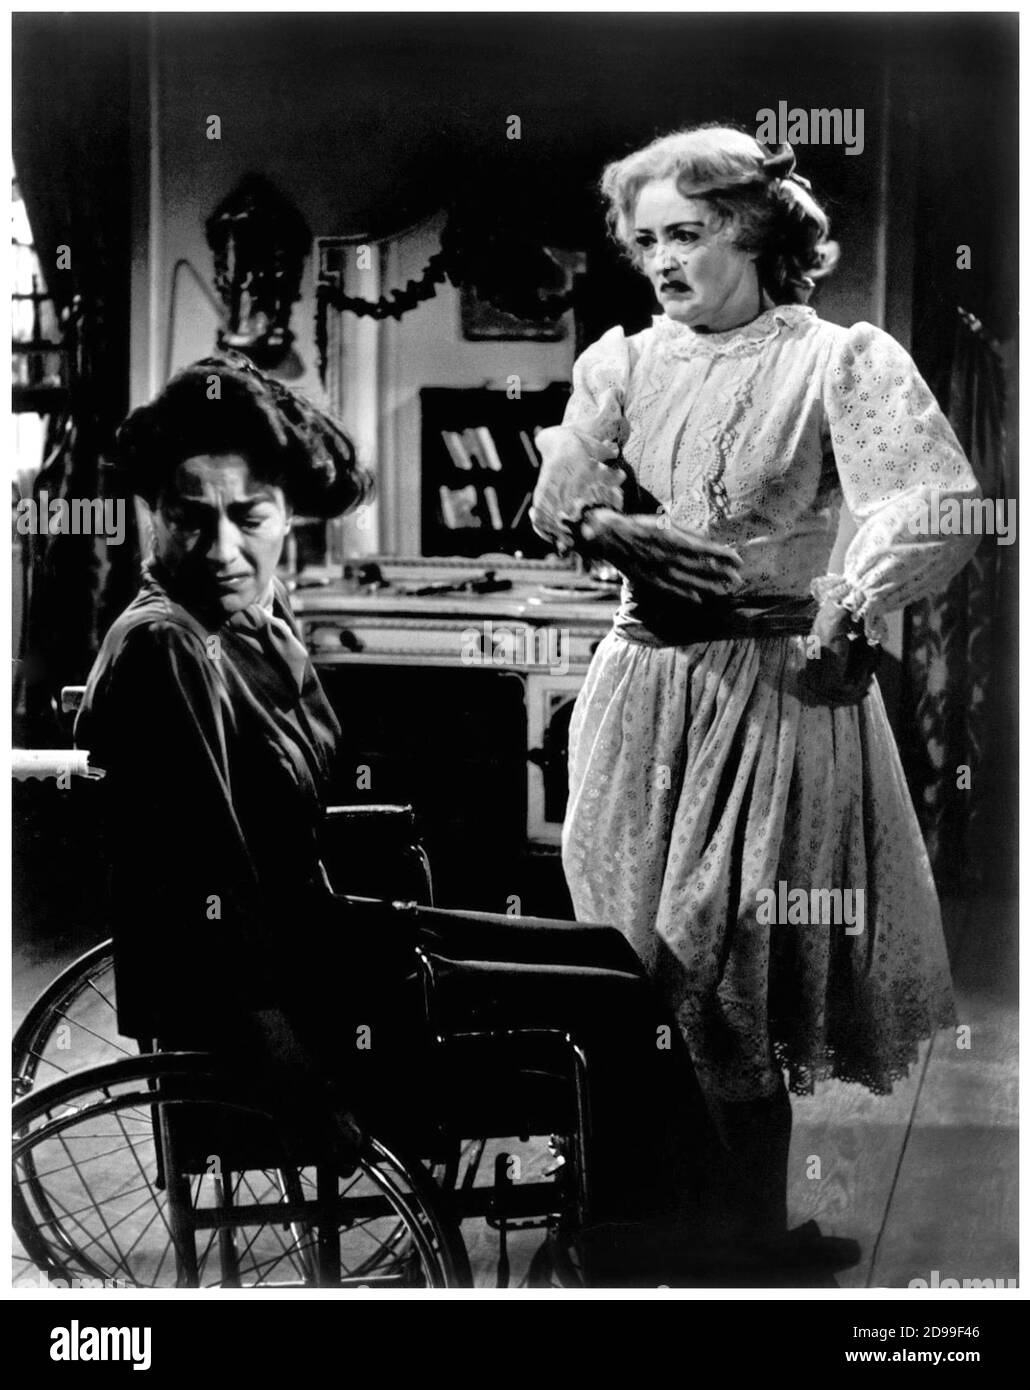 1963 , USA : Pubblicity Still für den Film mit BETTE DAVIS und JOAN CRAWFORD mit dem Titel WHAT EVER HAPPENED TO BABY JANE? ( Che fine ha fatto Baby Jane? ) , von ROBERT ALDRICH , aus einem Roman von Henry Farrell , WARNER BROS. Und Seven Arts productions - KINO - FILM - REGISTA CINEMATOGRAFICO - TRILLER - HORROR - FILM ----- NICHT FÜR WERBEZWECKE --- NON PER USO PUBBLICITARIO --- NICHT FÜR DEN GEBRAUCH VON GADGETS - ACHTUNG: Dieses Foto kann nur von Publikationen im Zusammenhang mit der Werbung für den oben genannten Film reproduziert werden. Nur Für Redaktionelle Zwecke.------- Archivio GBB Stockfoto